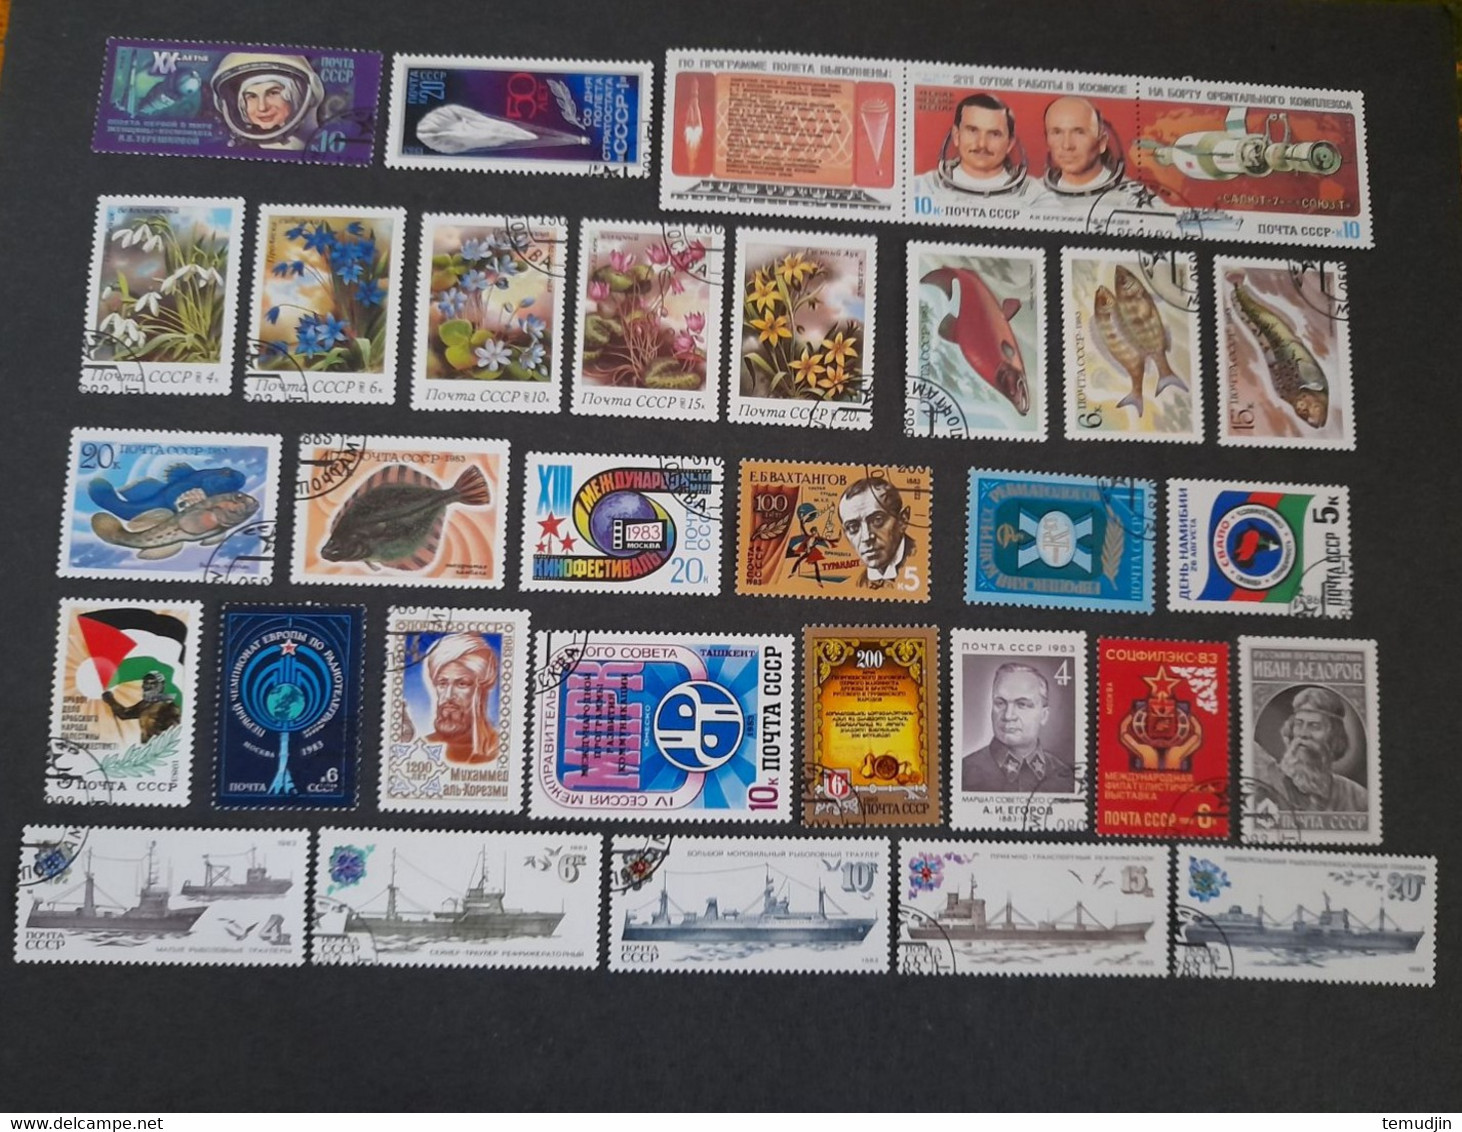 U.R.S.S. 1982 et 1983: 2 années complètes Yv. timbres oblitérés° avec blocs